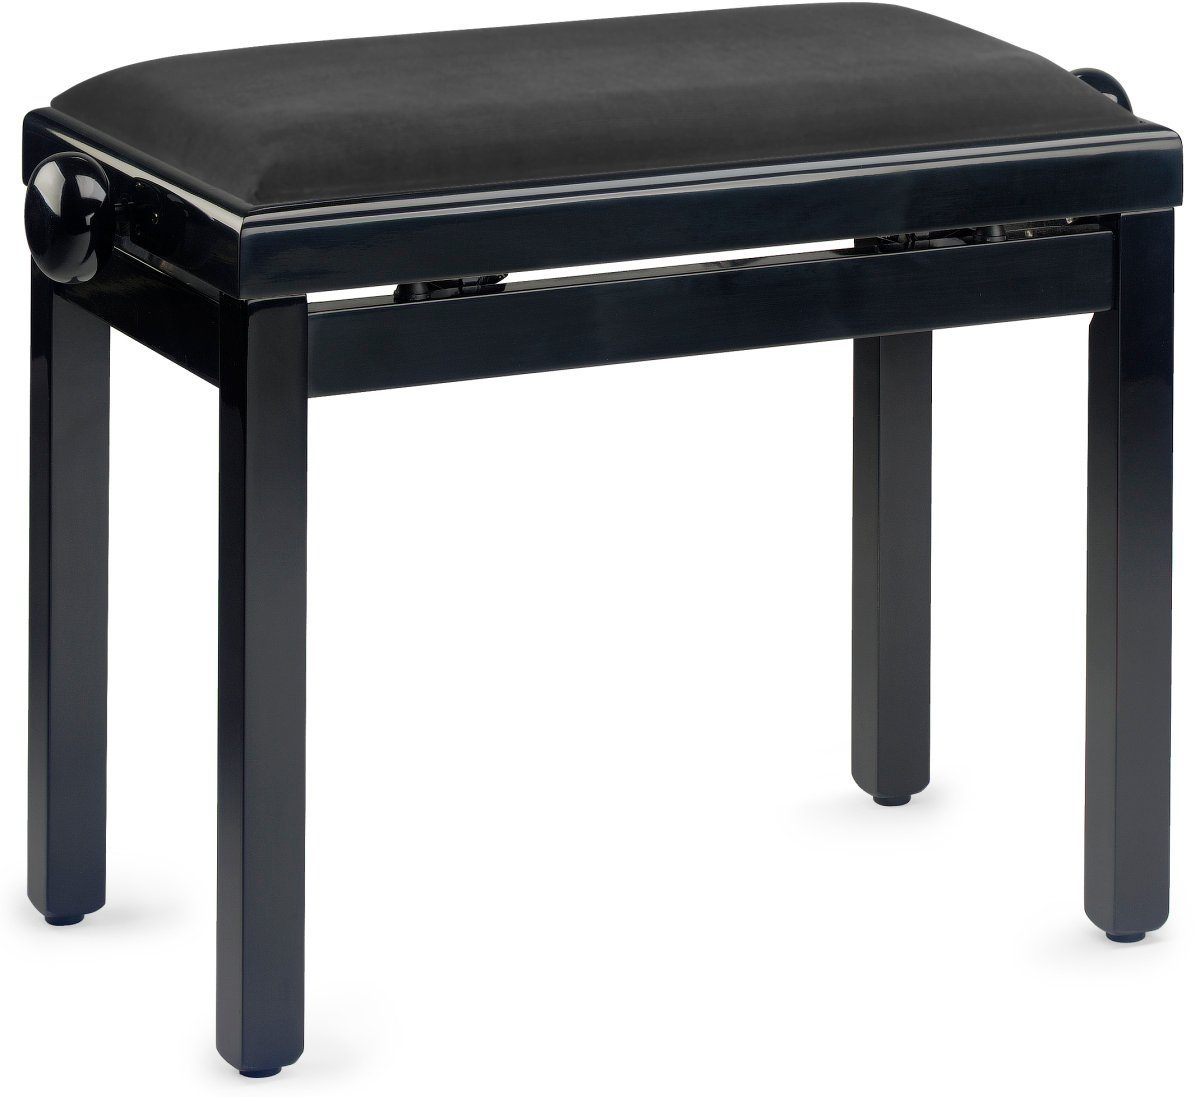 Stagg Klavierbank Klavierbank in Schwarz poliert mit schwarzem Veloursbezug